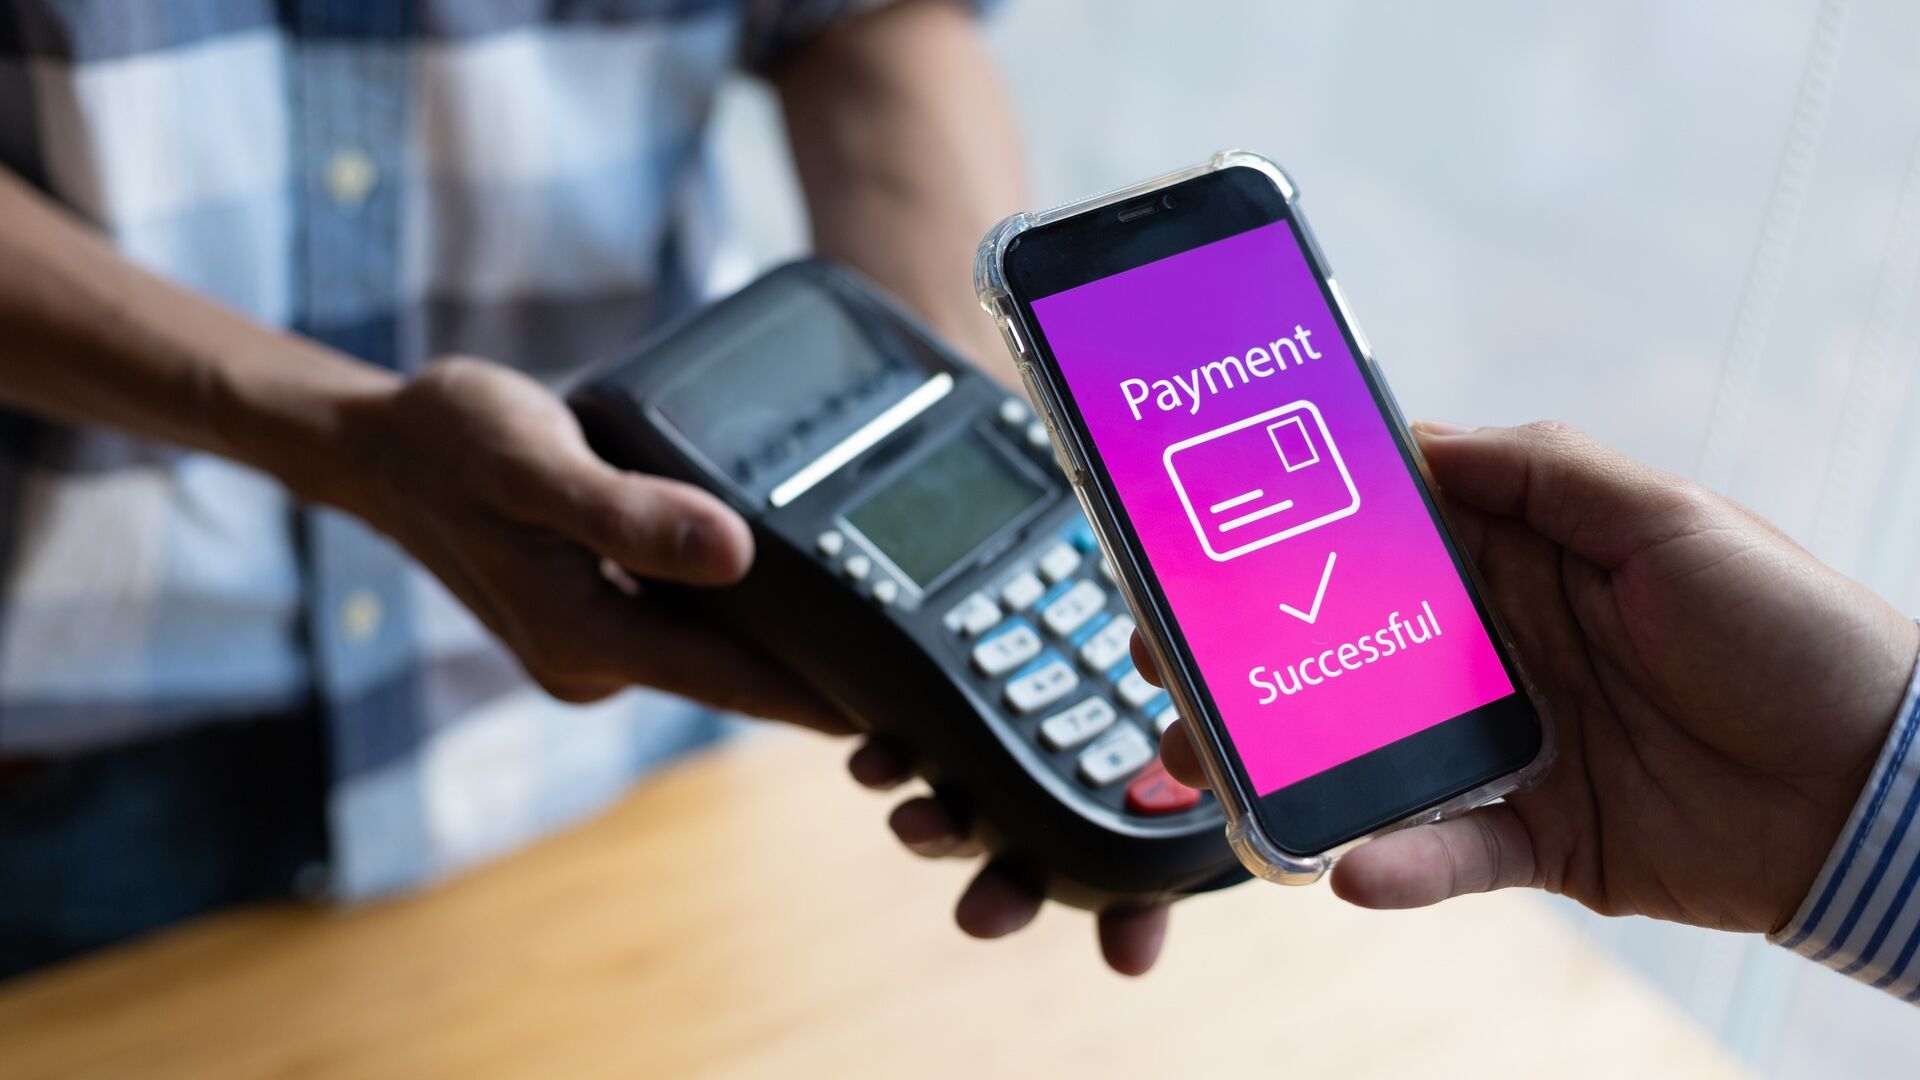 Mobilieji mokėjimai: norint įgyti vartotojų pasitikėjimą, turi būti veiksmingai pranešama apie mobiliųjų mokėjimų naudą ir pašalintos saugumo problemos